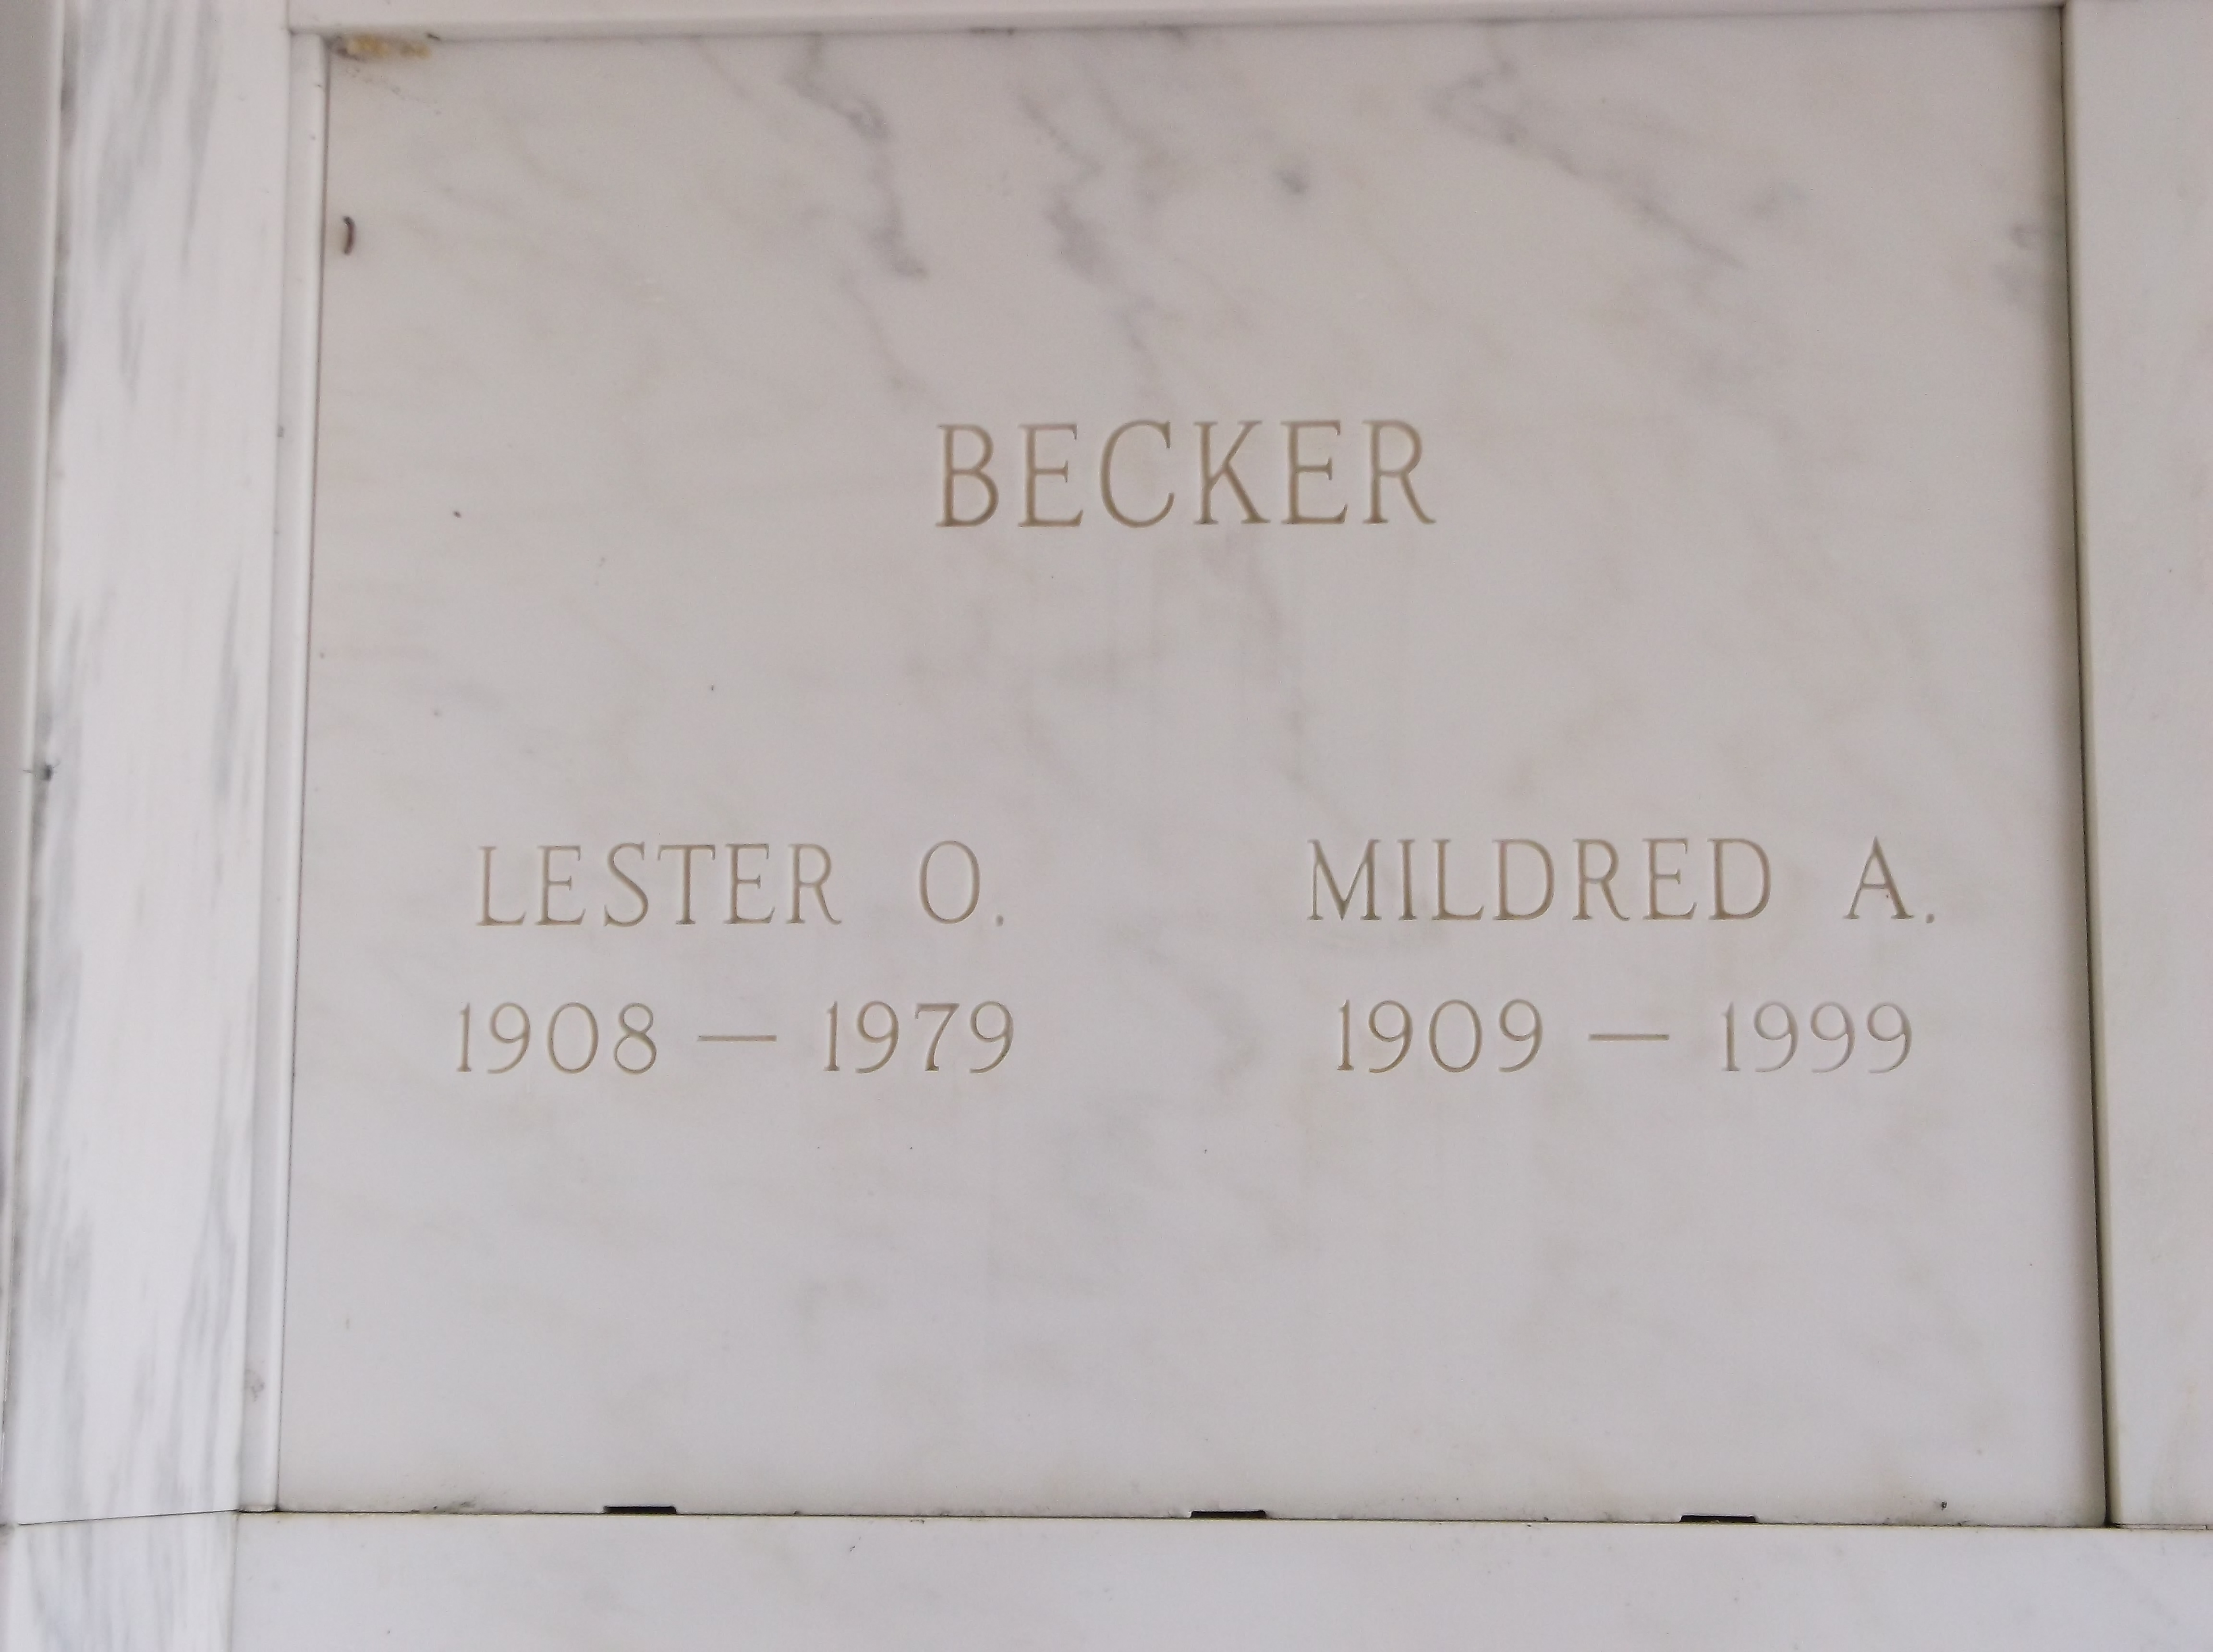 Mildred A Becker